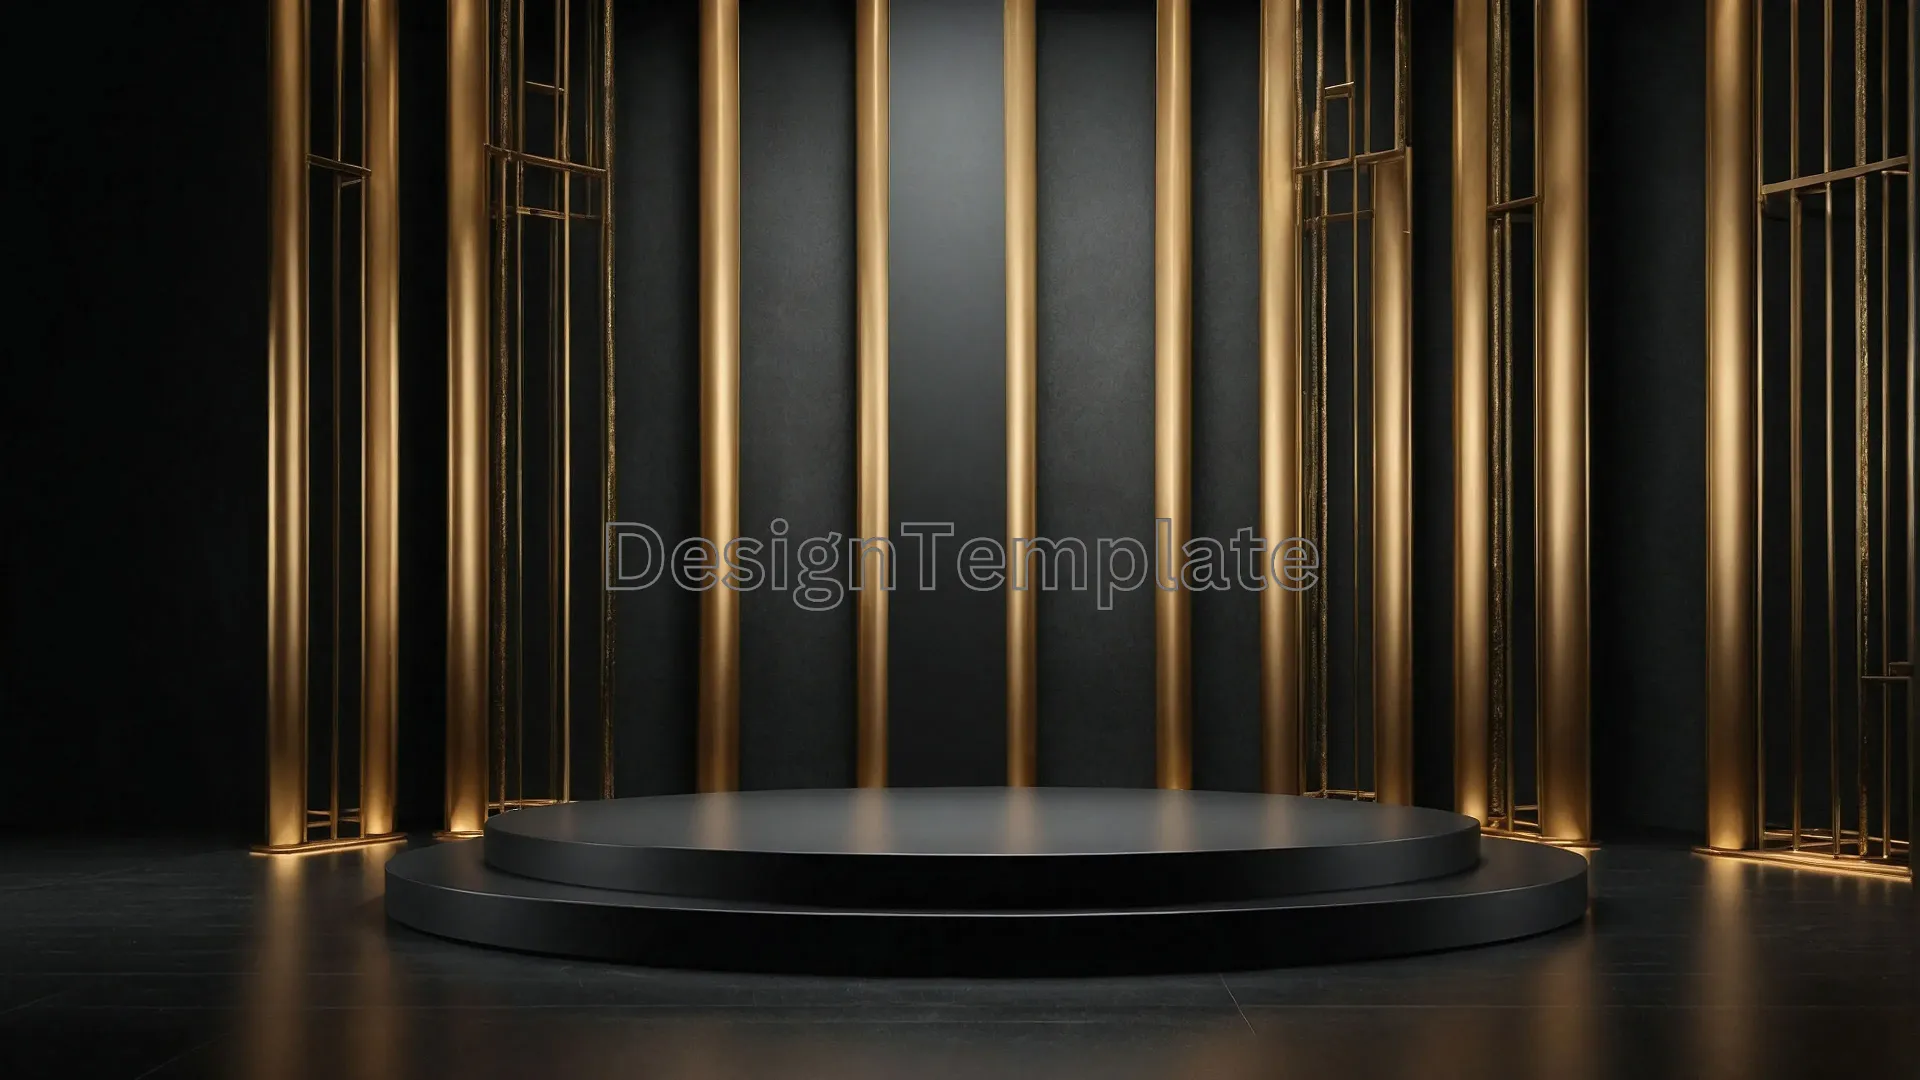 Elegant Award Show Podium with Golden Curtains Image image